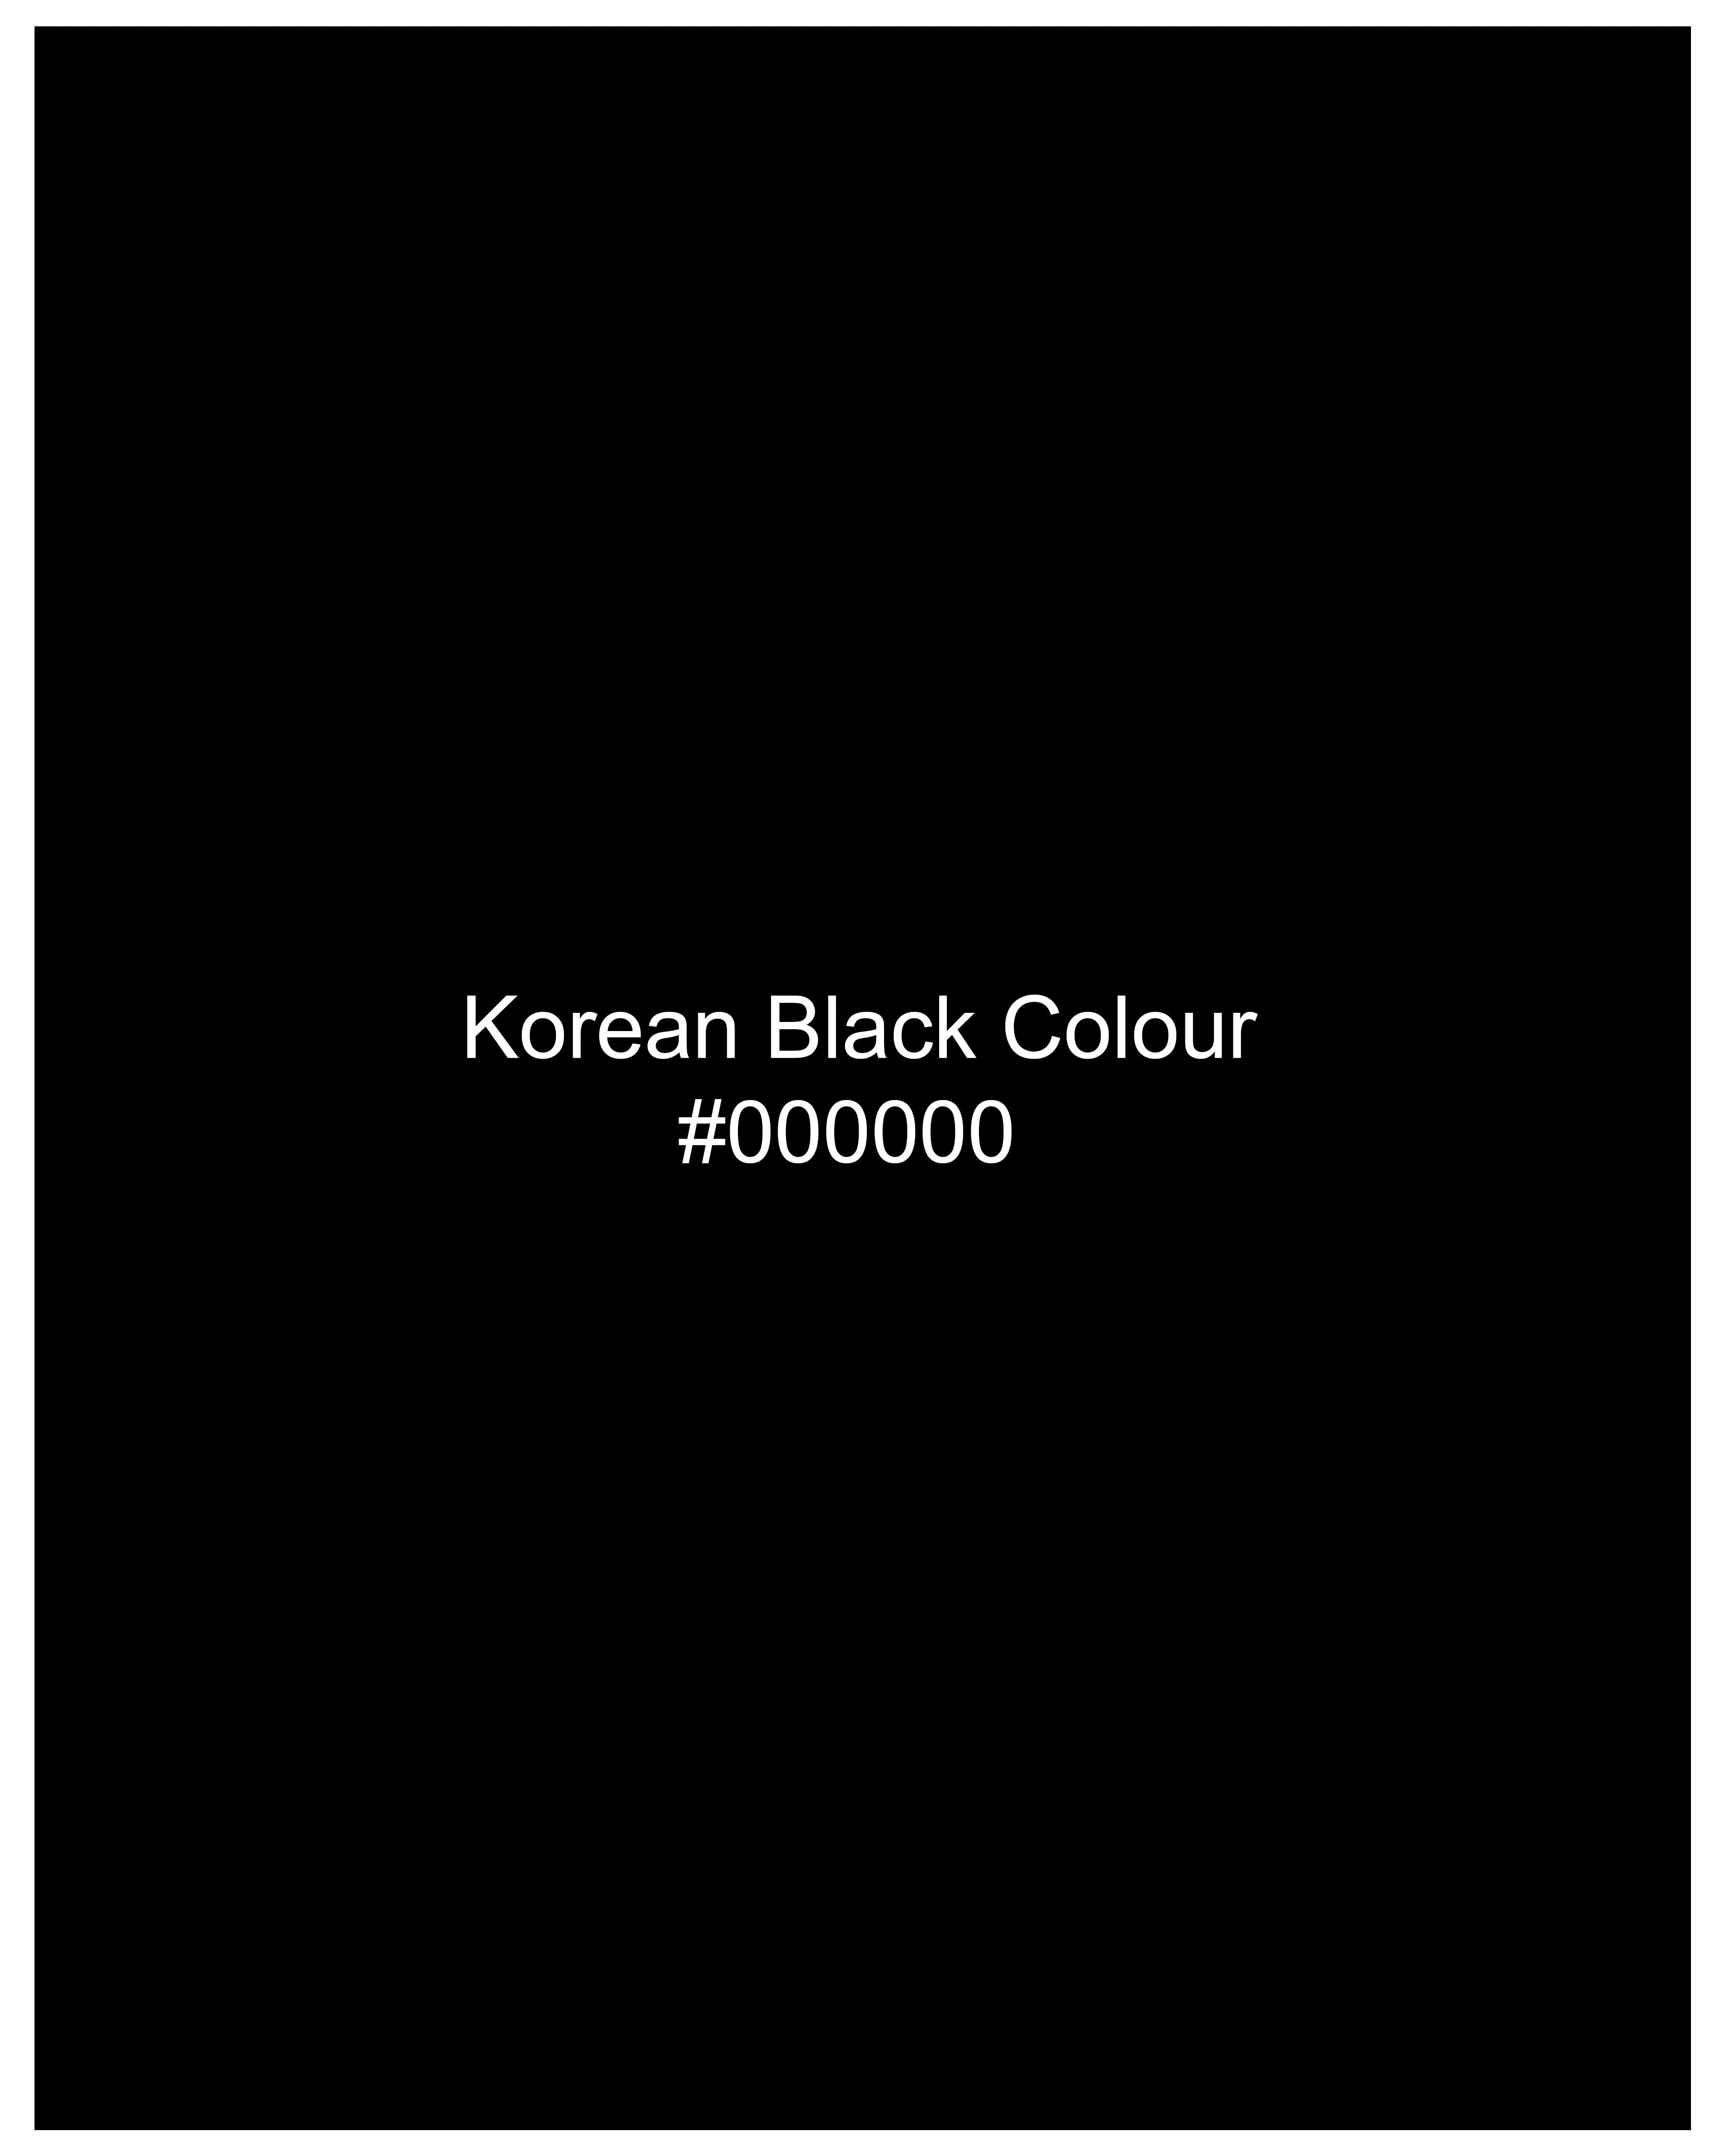 Korean Black (The Best Black We Have) Cross-Buttoned Bandhgala Suit ST2605-CBG-36, ST2605-CBG-38, ST2605-CBG-40, ST2605-CBG-42, ST2605-CBG-44, ST2605-CBG-46, ST2605-CBG-48, ST2605-CBG-50, ST2605-CBG-52, ST2605-CBG-54, ST2605-CBG-56, ST2605-CBG-58, ST2605-CBG-60